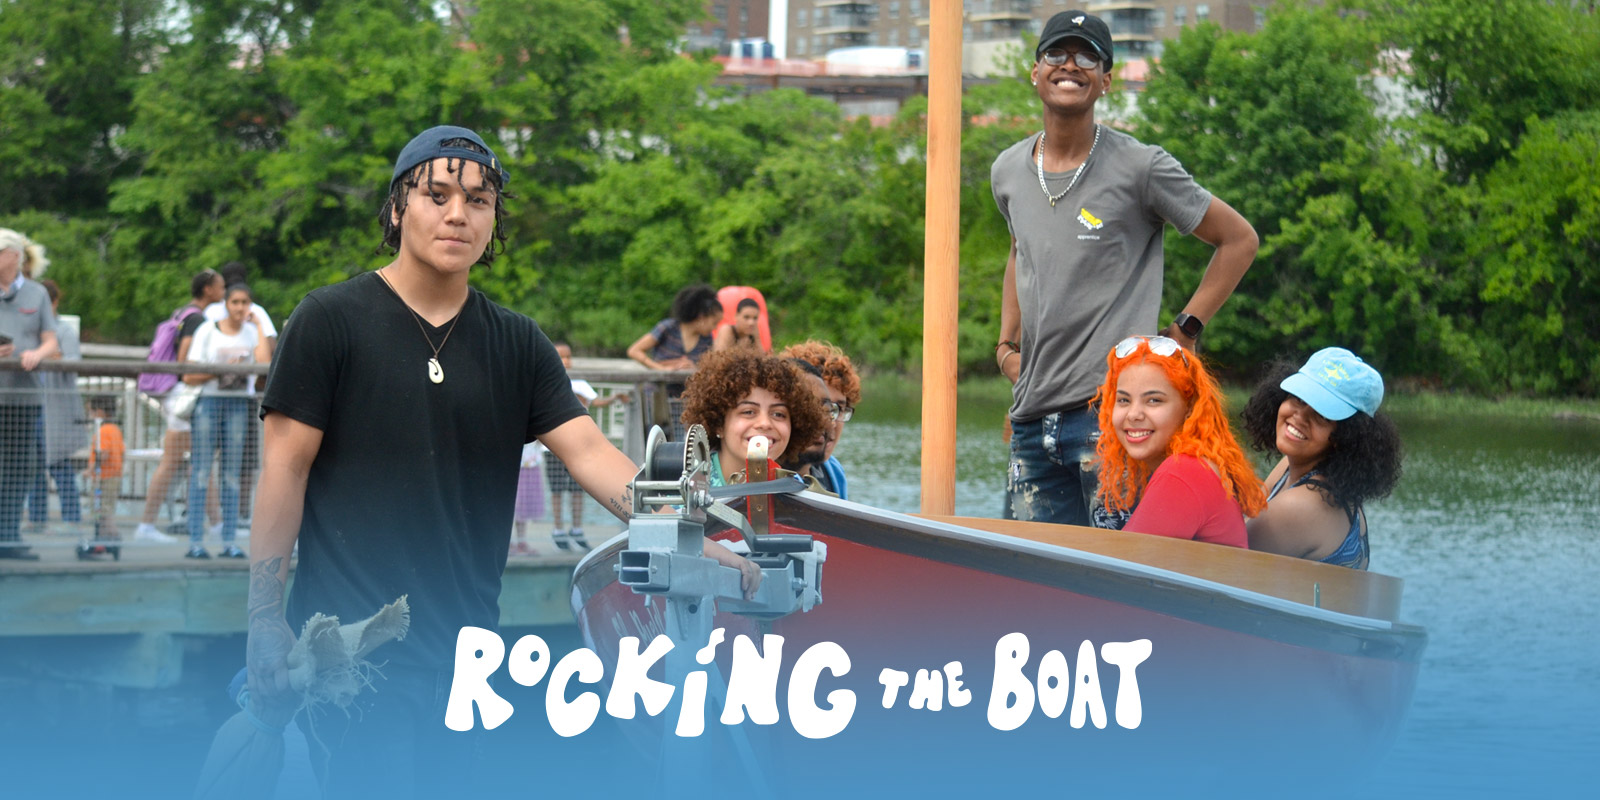 (c) Rockingtheboat.org